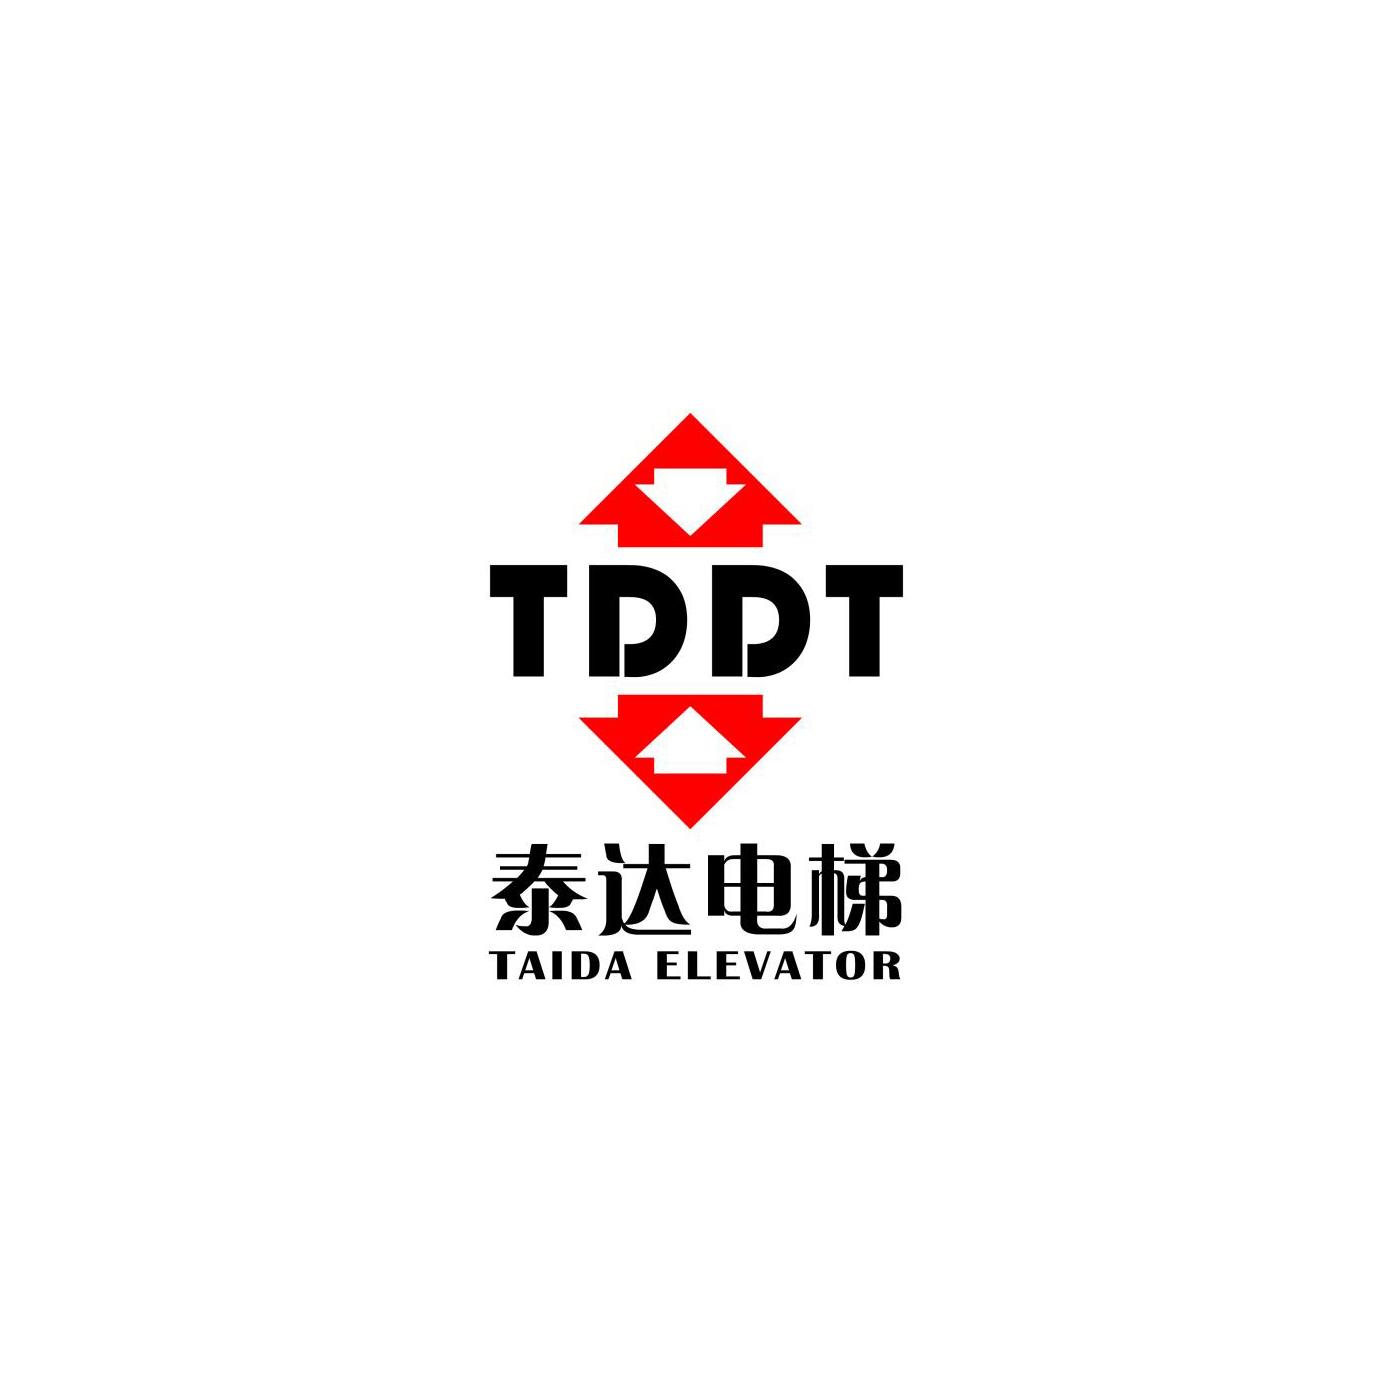 2020-07-20国际分类:第37类-建筑修理商标申请人:北京中建泰达电梯